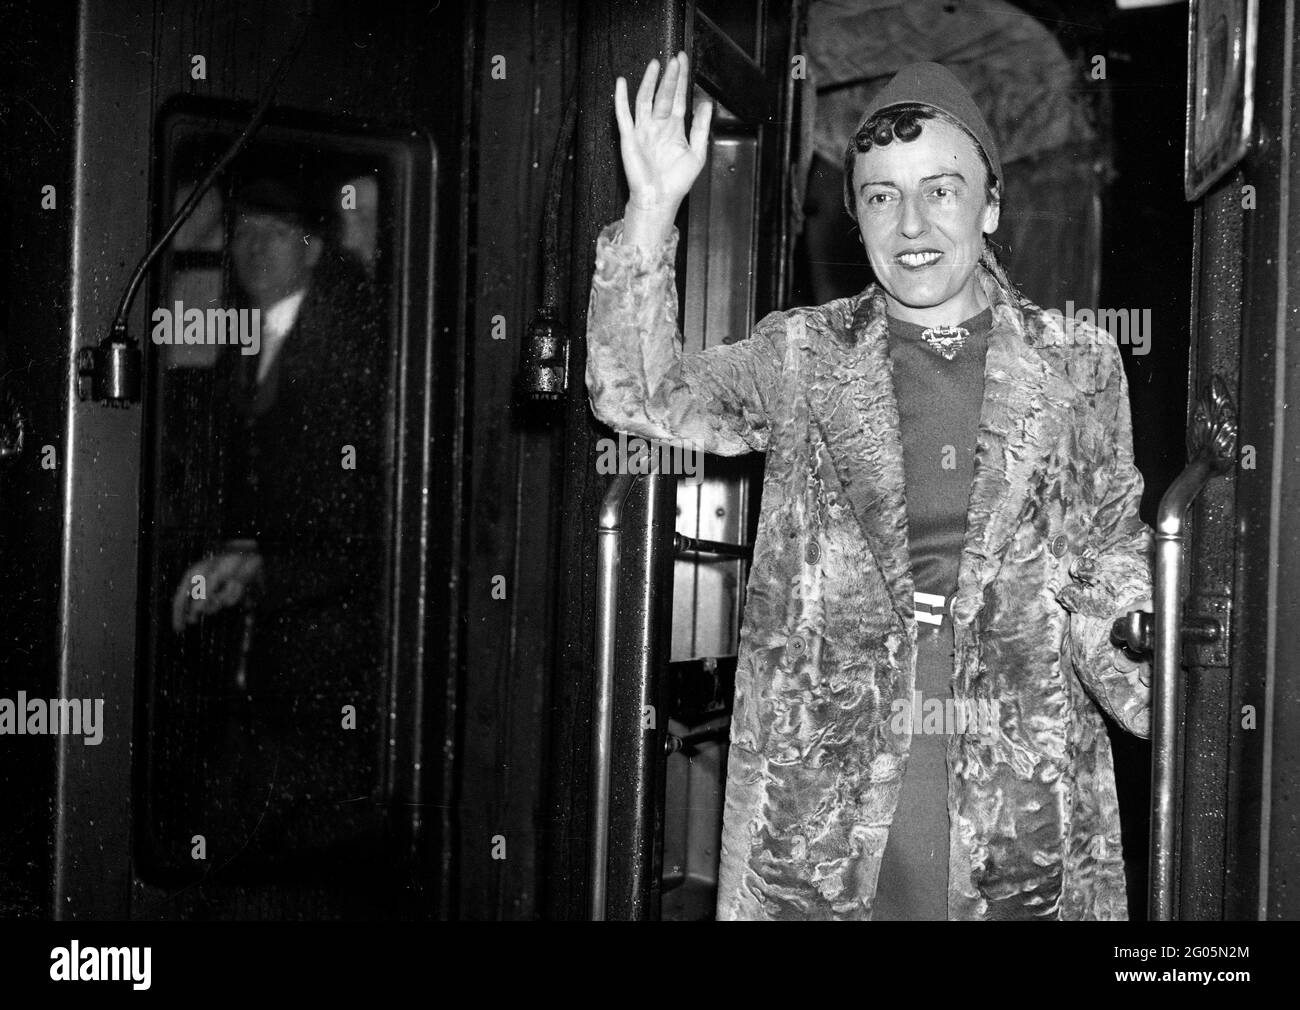 Embarquement à bord du train de bateau « RMS Queen Mary » pour sa première visite à la romancière et jouante anglaise américaine Dodie Smith (1896 - 1990) portant son manteau de fourrure de marque à la gare de Waterloo, Londres, 27 octobre 1937. Dorothy Gladys 'Dodie' Smith. Auteur des cent et un Dalmatiens. Fourrure mode Grande-Bretagne années 1930 1937 femmes femmes femmes femmes écrivain Kiss curl Kiss curls tendance flamboyant commode dressing femme actrice femme agitant train de prendre le départ Banque D'Images